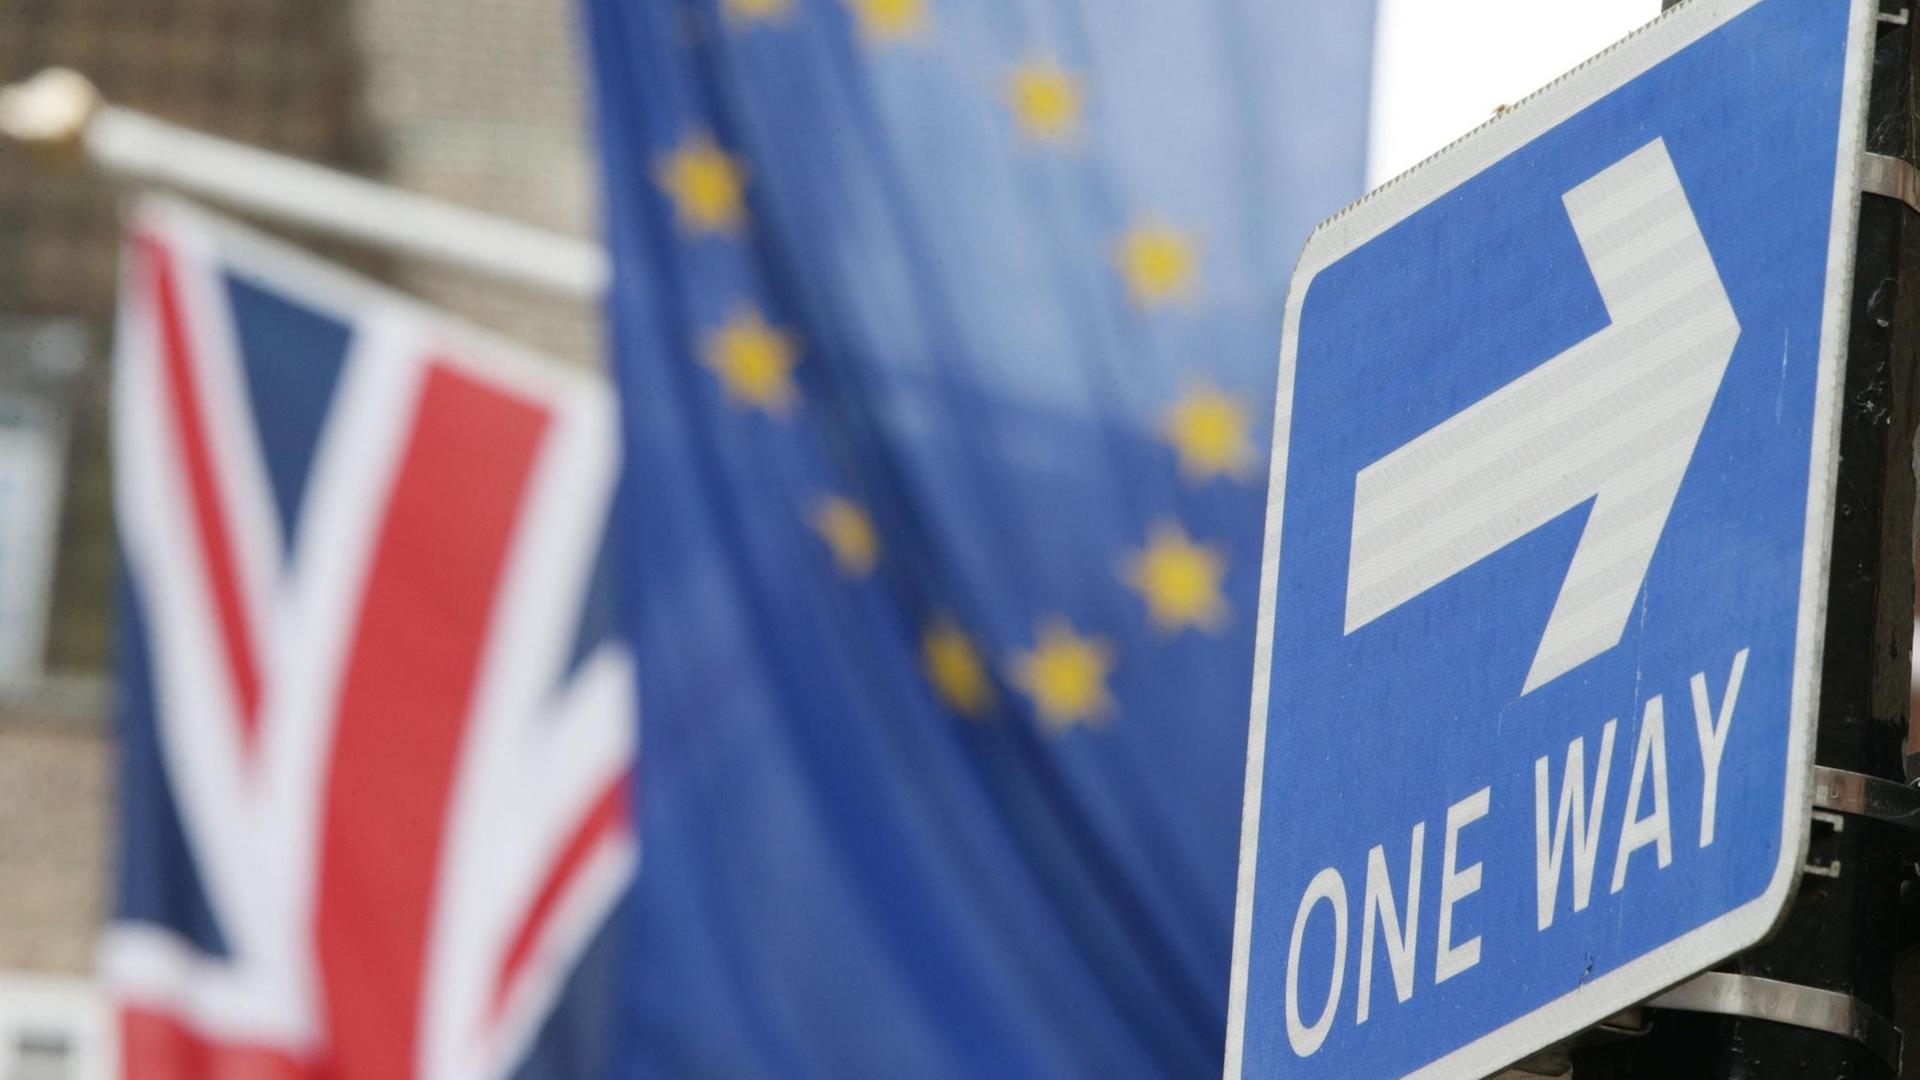 Ein englisches Einbahnstraße-Schild, im Hintergrund sind die Europaflagge und ein Union-Jack zu sehen.